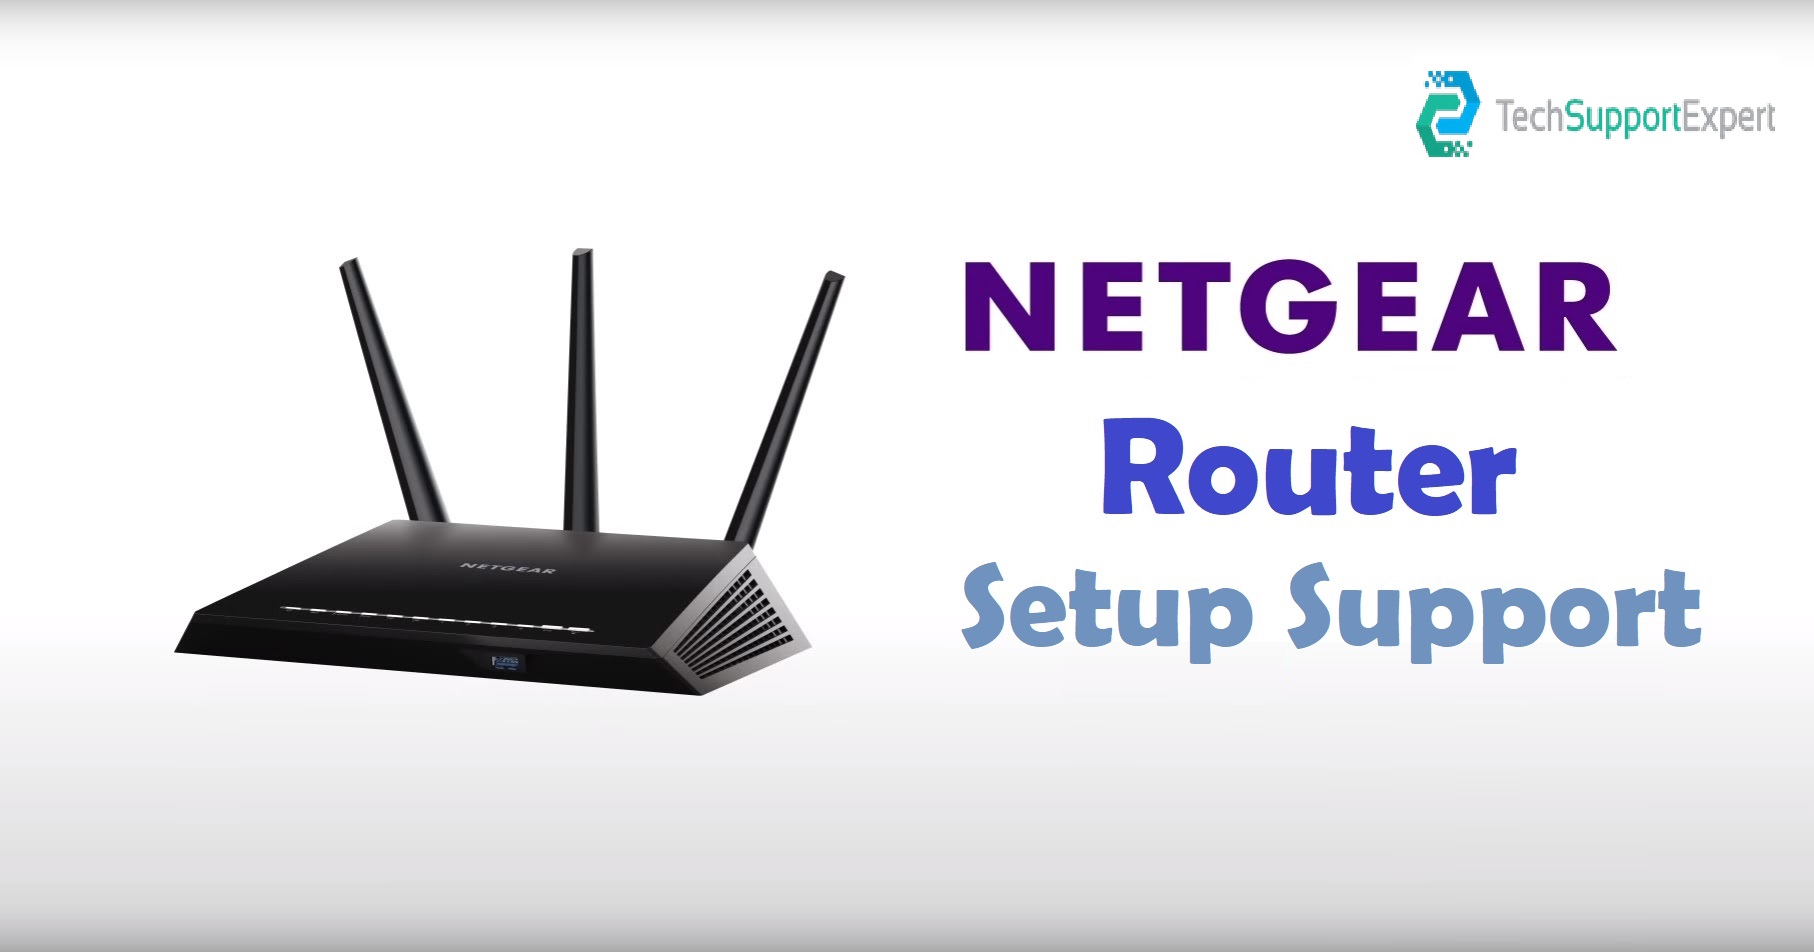 Netgear Router Setup Support